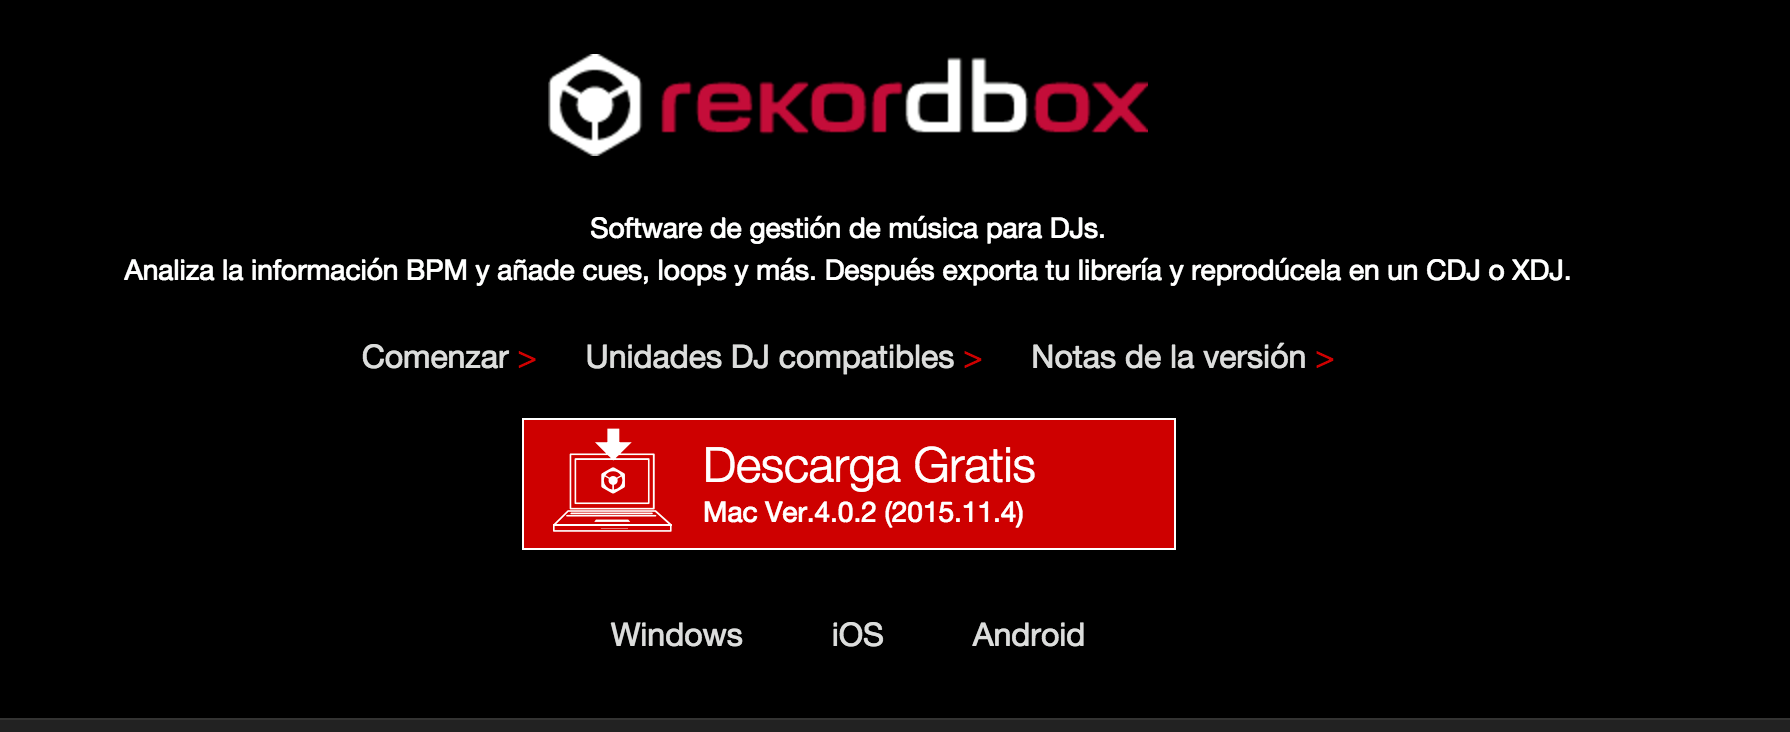 Actualización Rekordbox 4.0.2 ya disponible